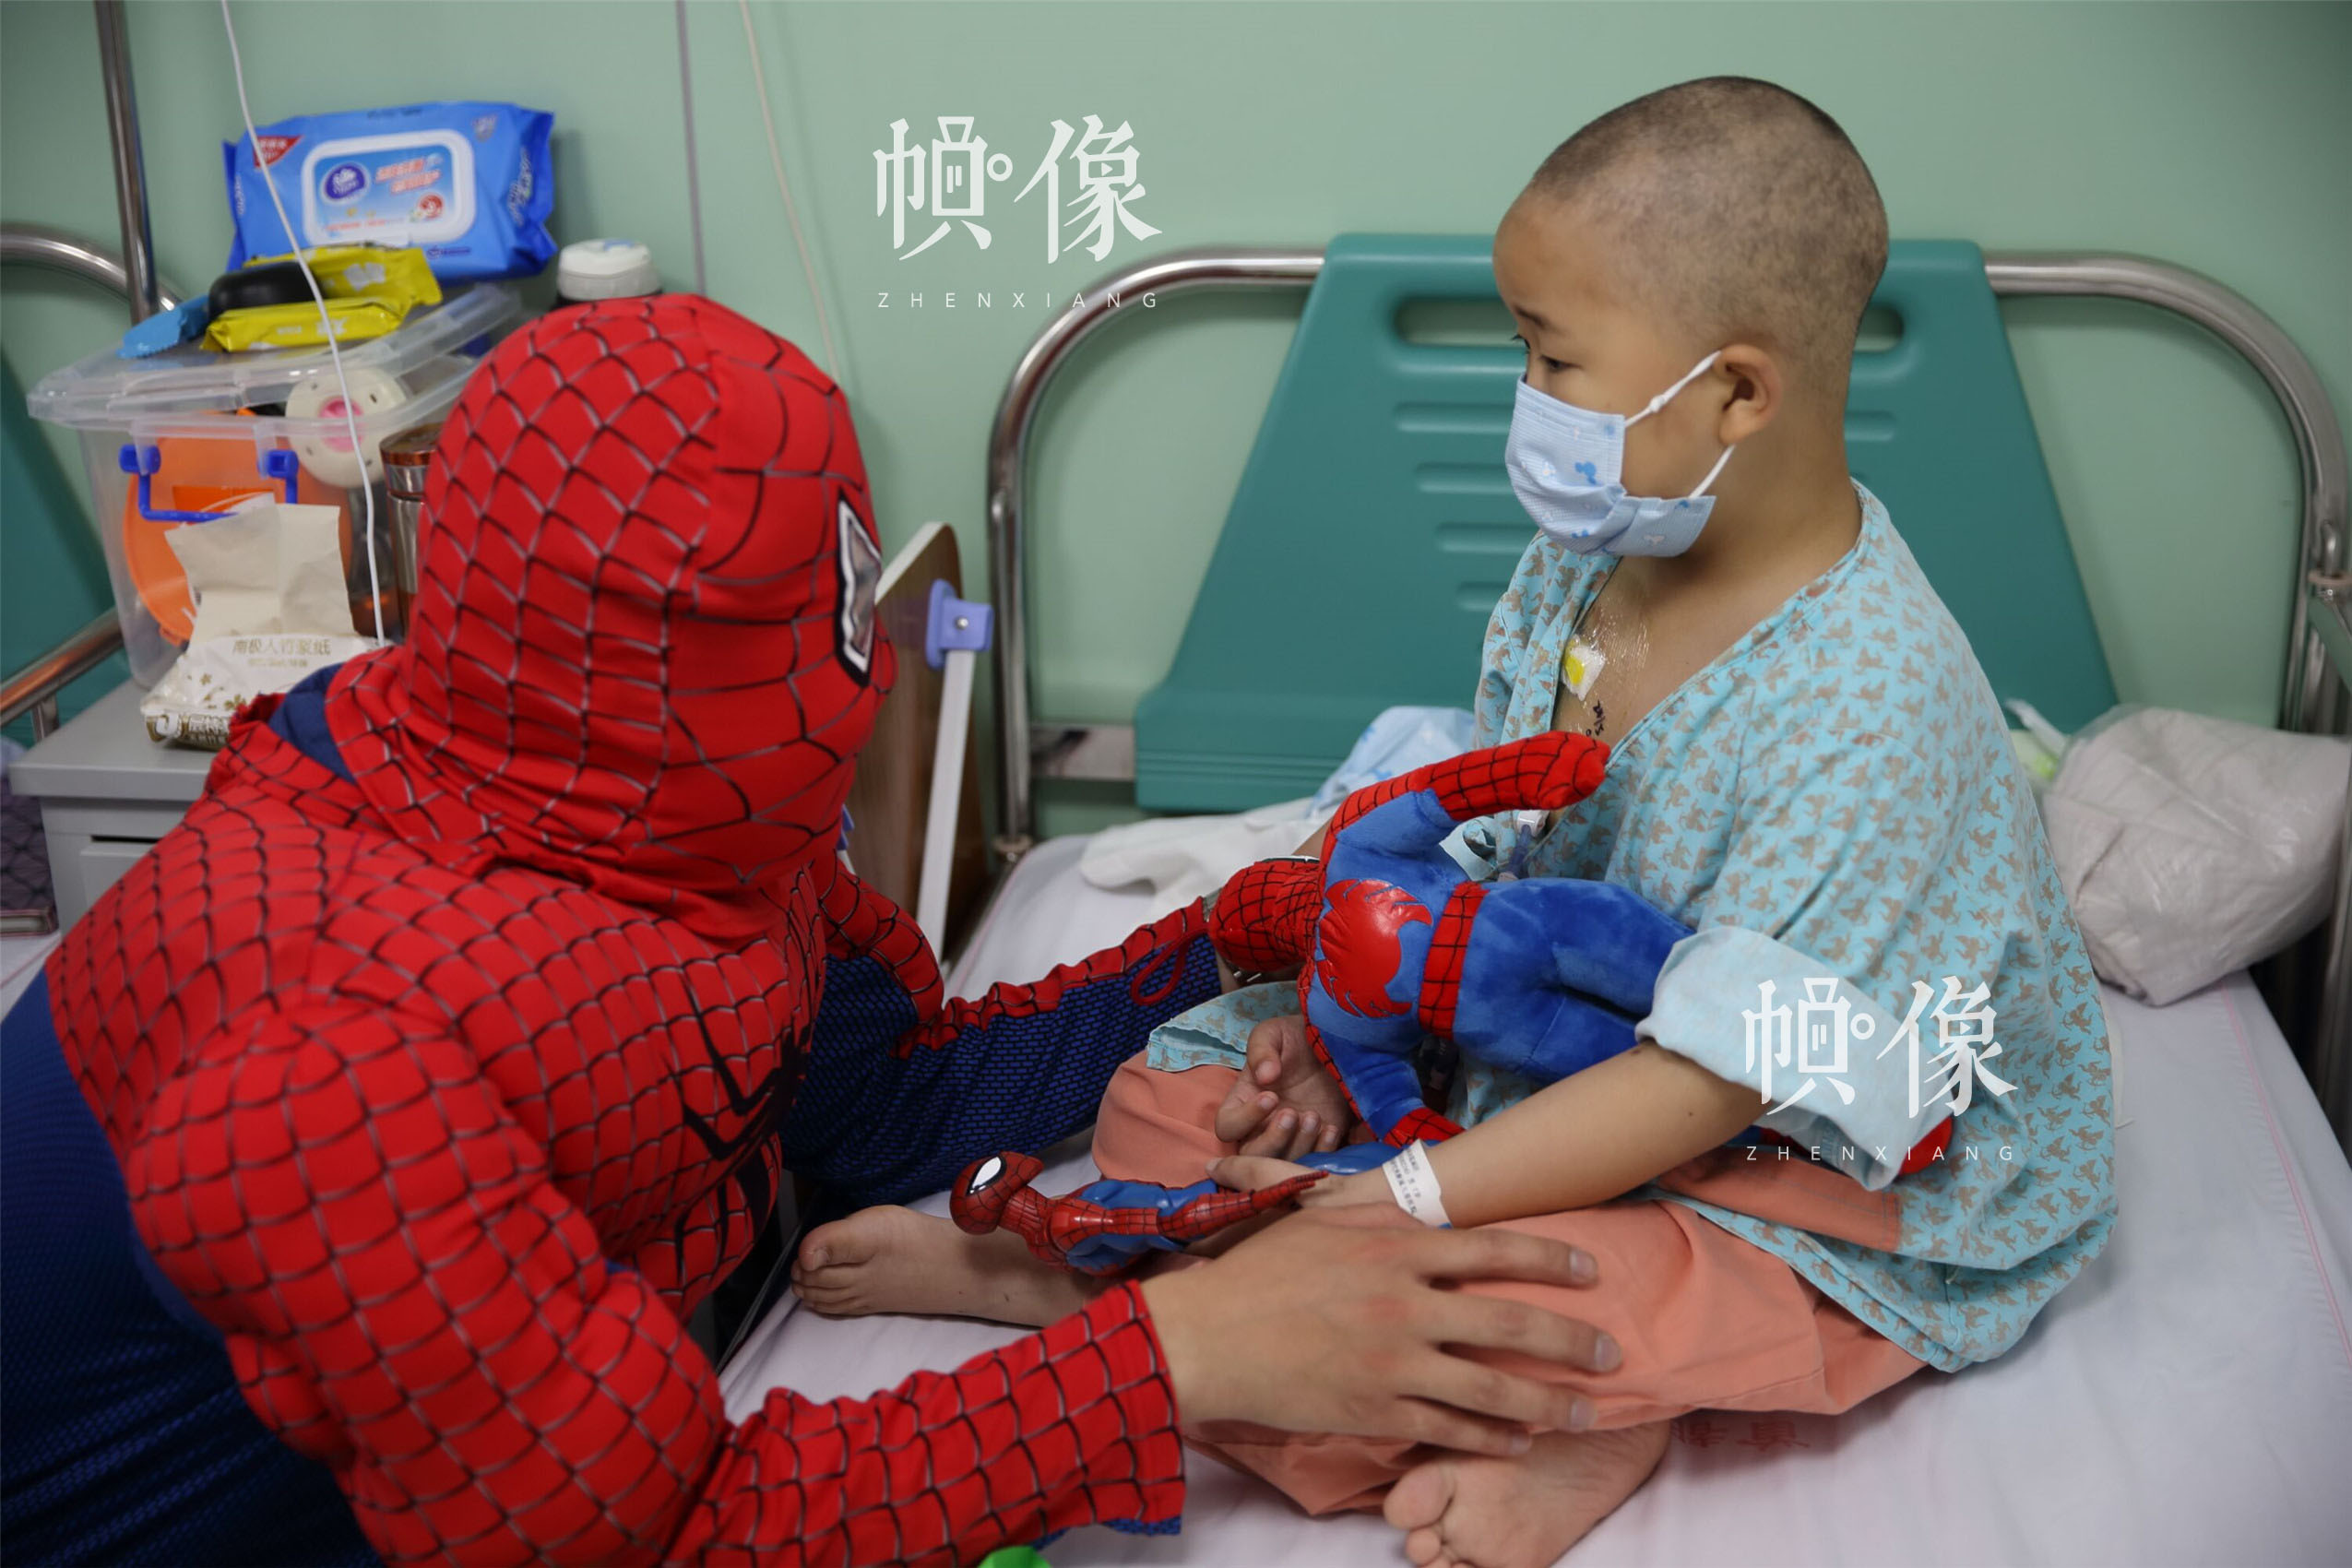 2017年5月26日，北京首都儿科研究所，“你是我的英雄”活动结束后，男护士季长绪穿着“蜘蛛侠”的衣服，来到病房看望天佑。他说，看到孩子的难受，看到孩子的坚强，自己很受启发。季长绪希望通过自己的工作，鼓励孩子们如心中的英雄人物一般，勇敢面对人生中暂时的艰难时刻。中国网记者 陈维松 摄